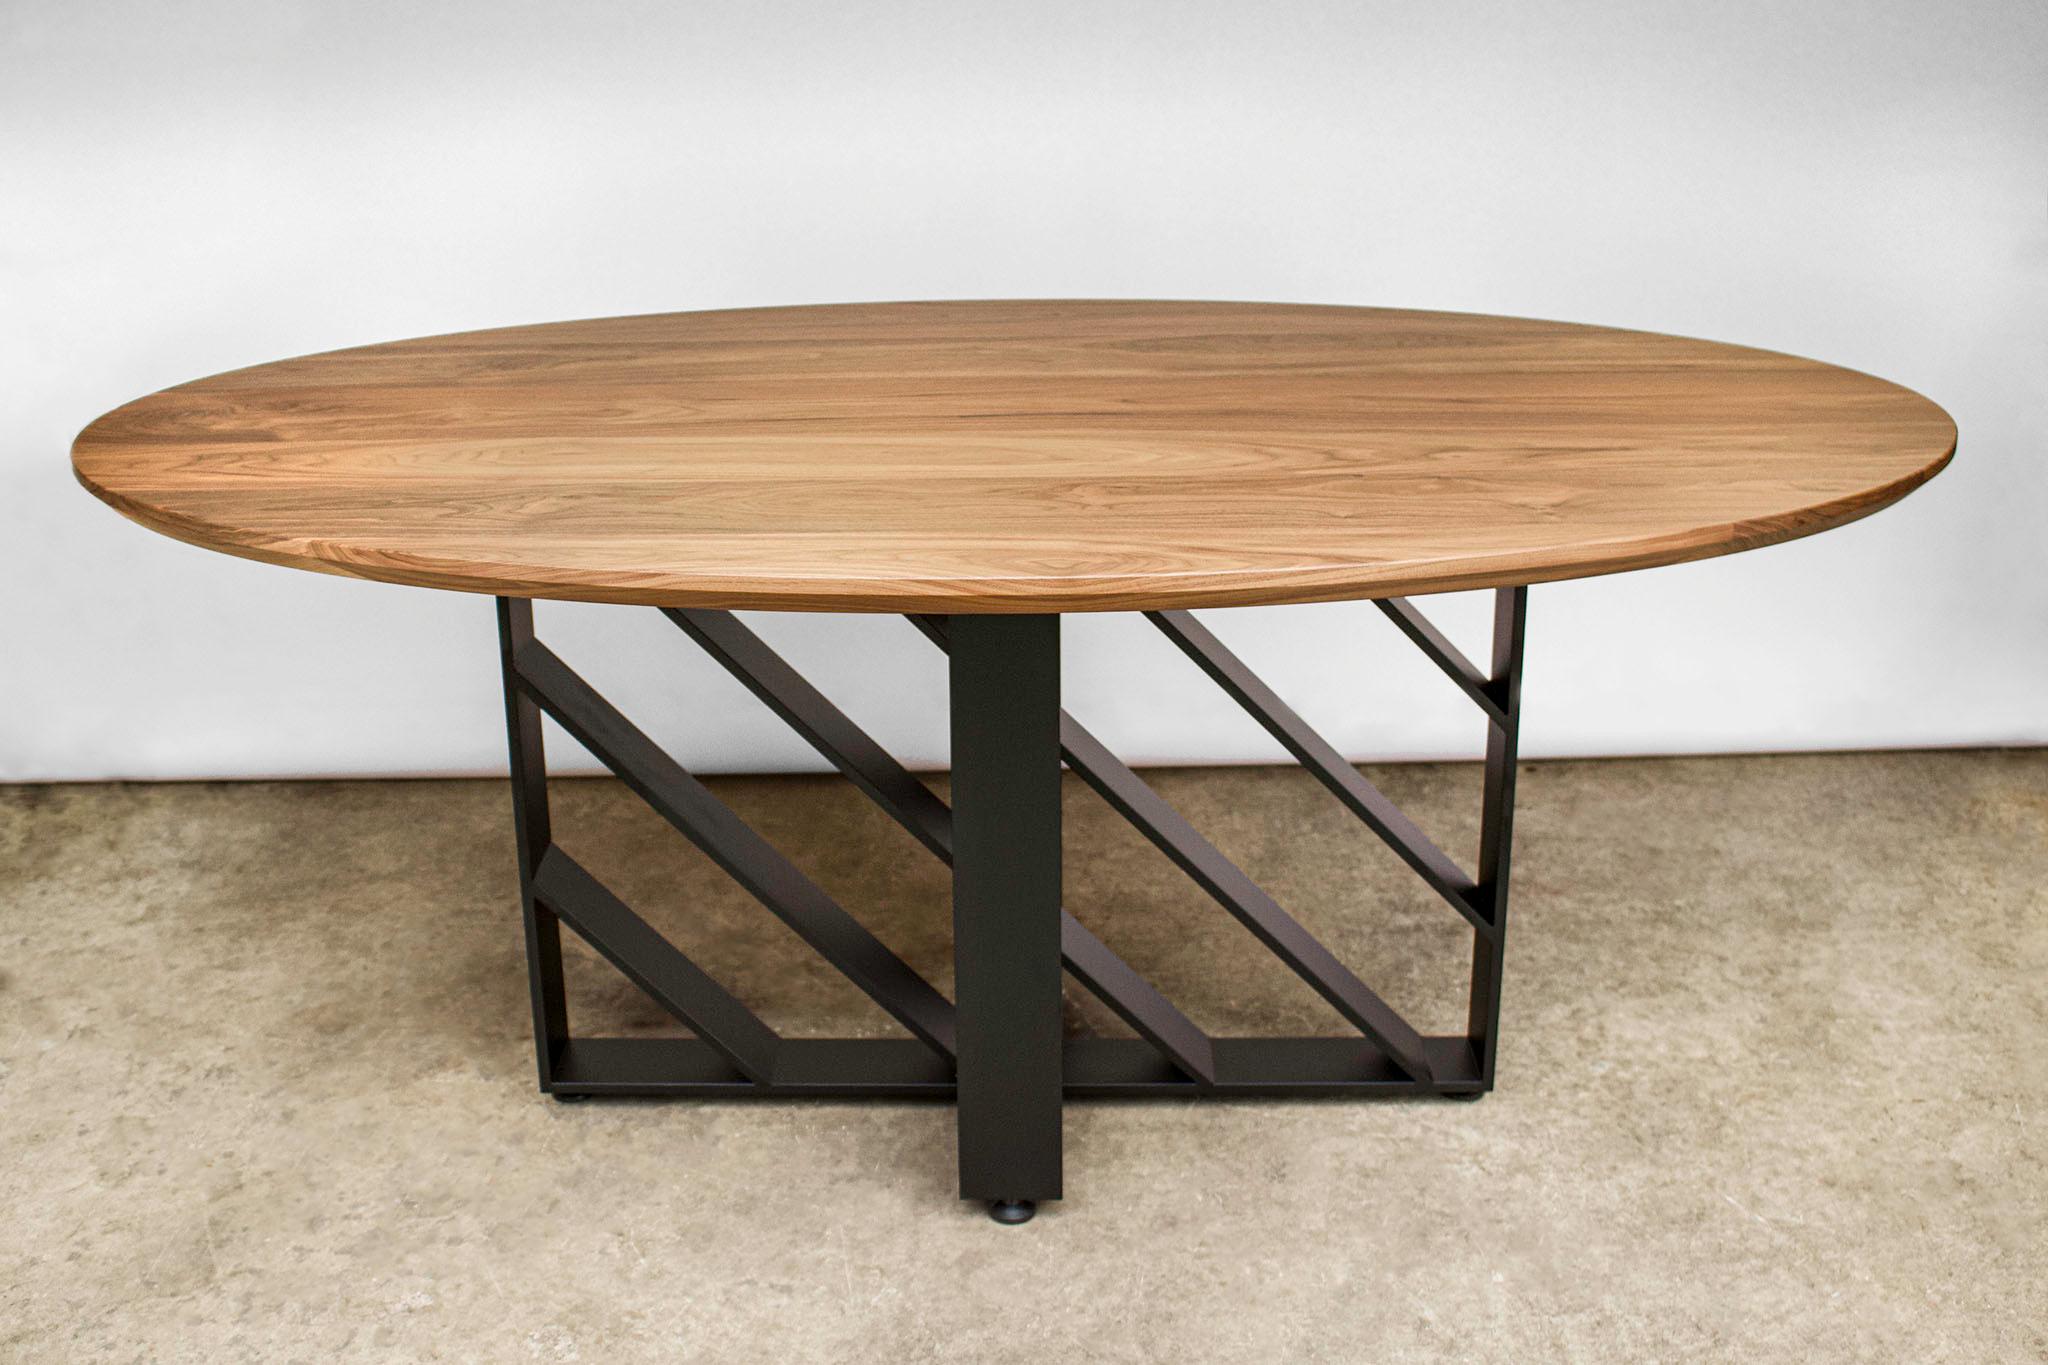 American Oval Dining Table, Blackened Steel, Hardwood, Modern, Custom, Semigood For Sale